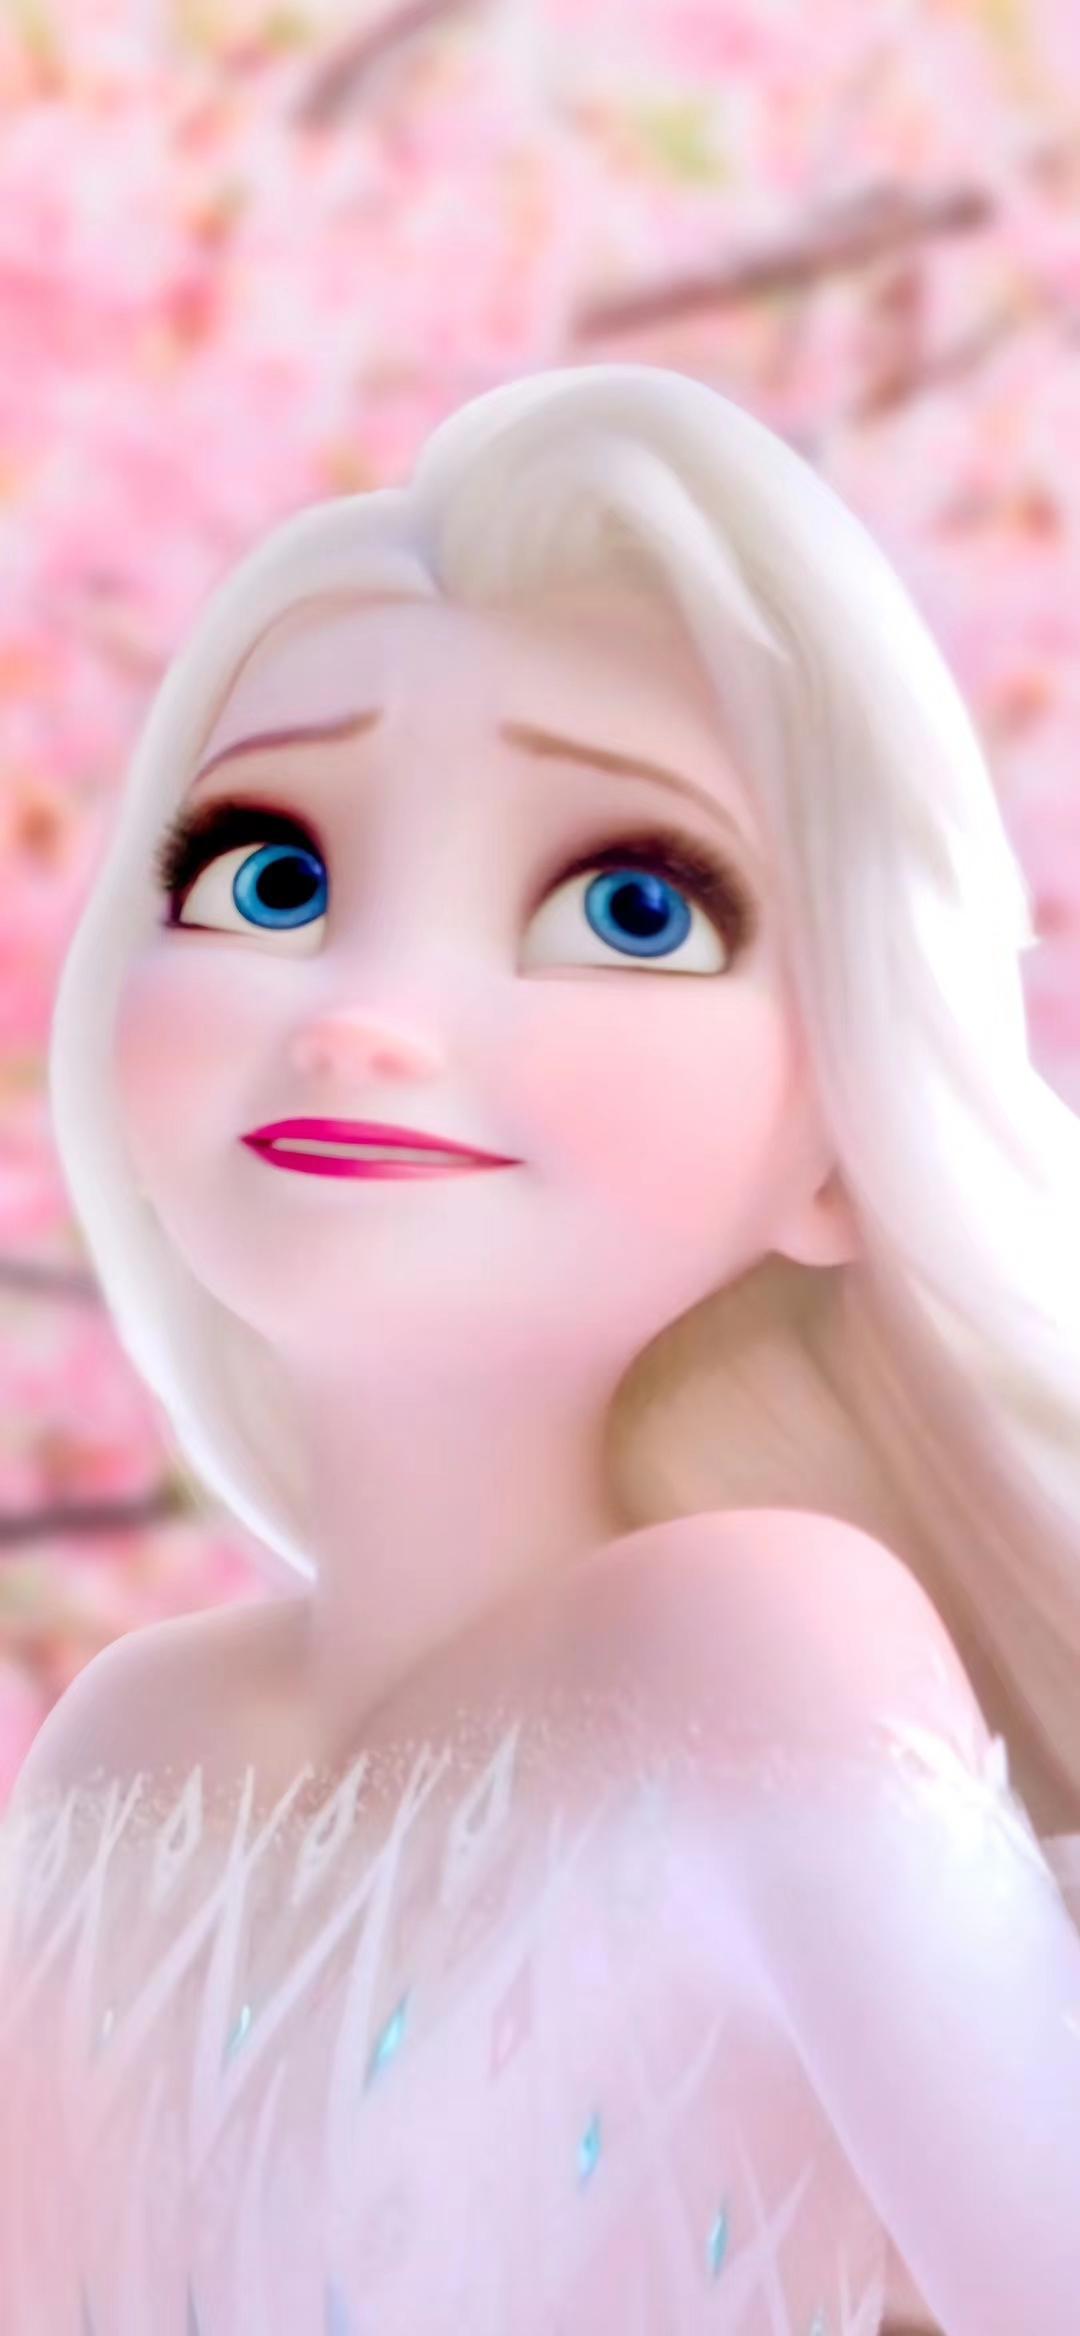 冰雪奇缘 迪士尼公主 艾莎Elsa - 堆糖，美图壁纸兴趣社区